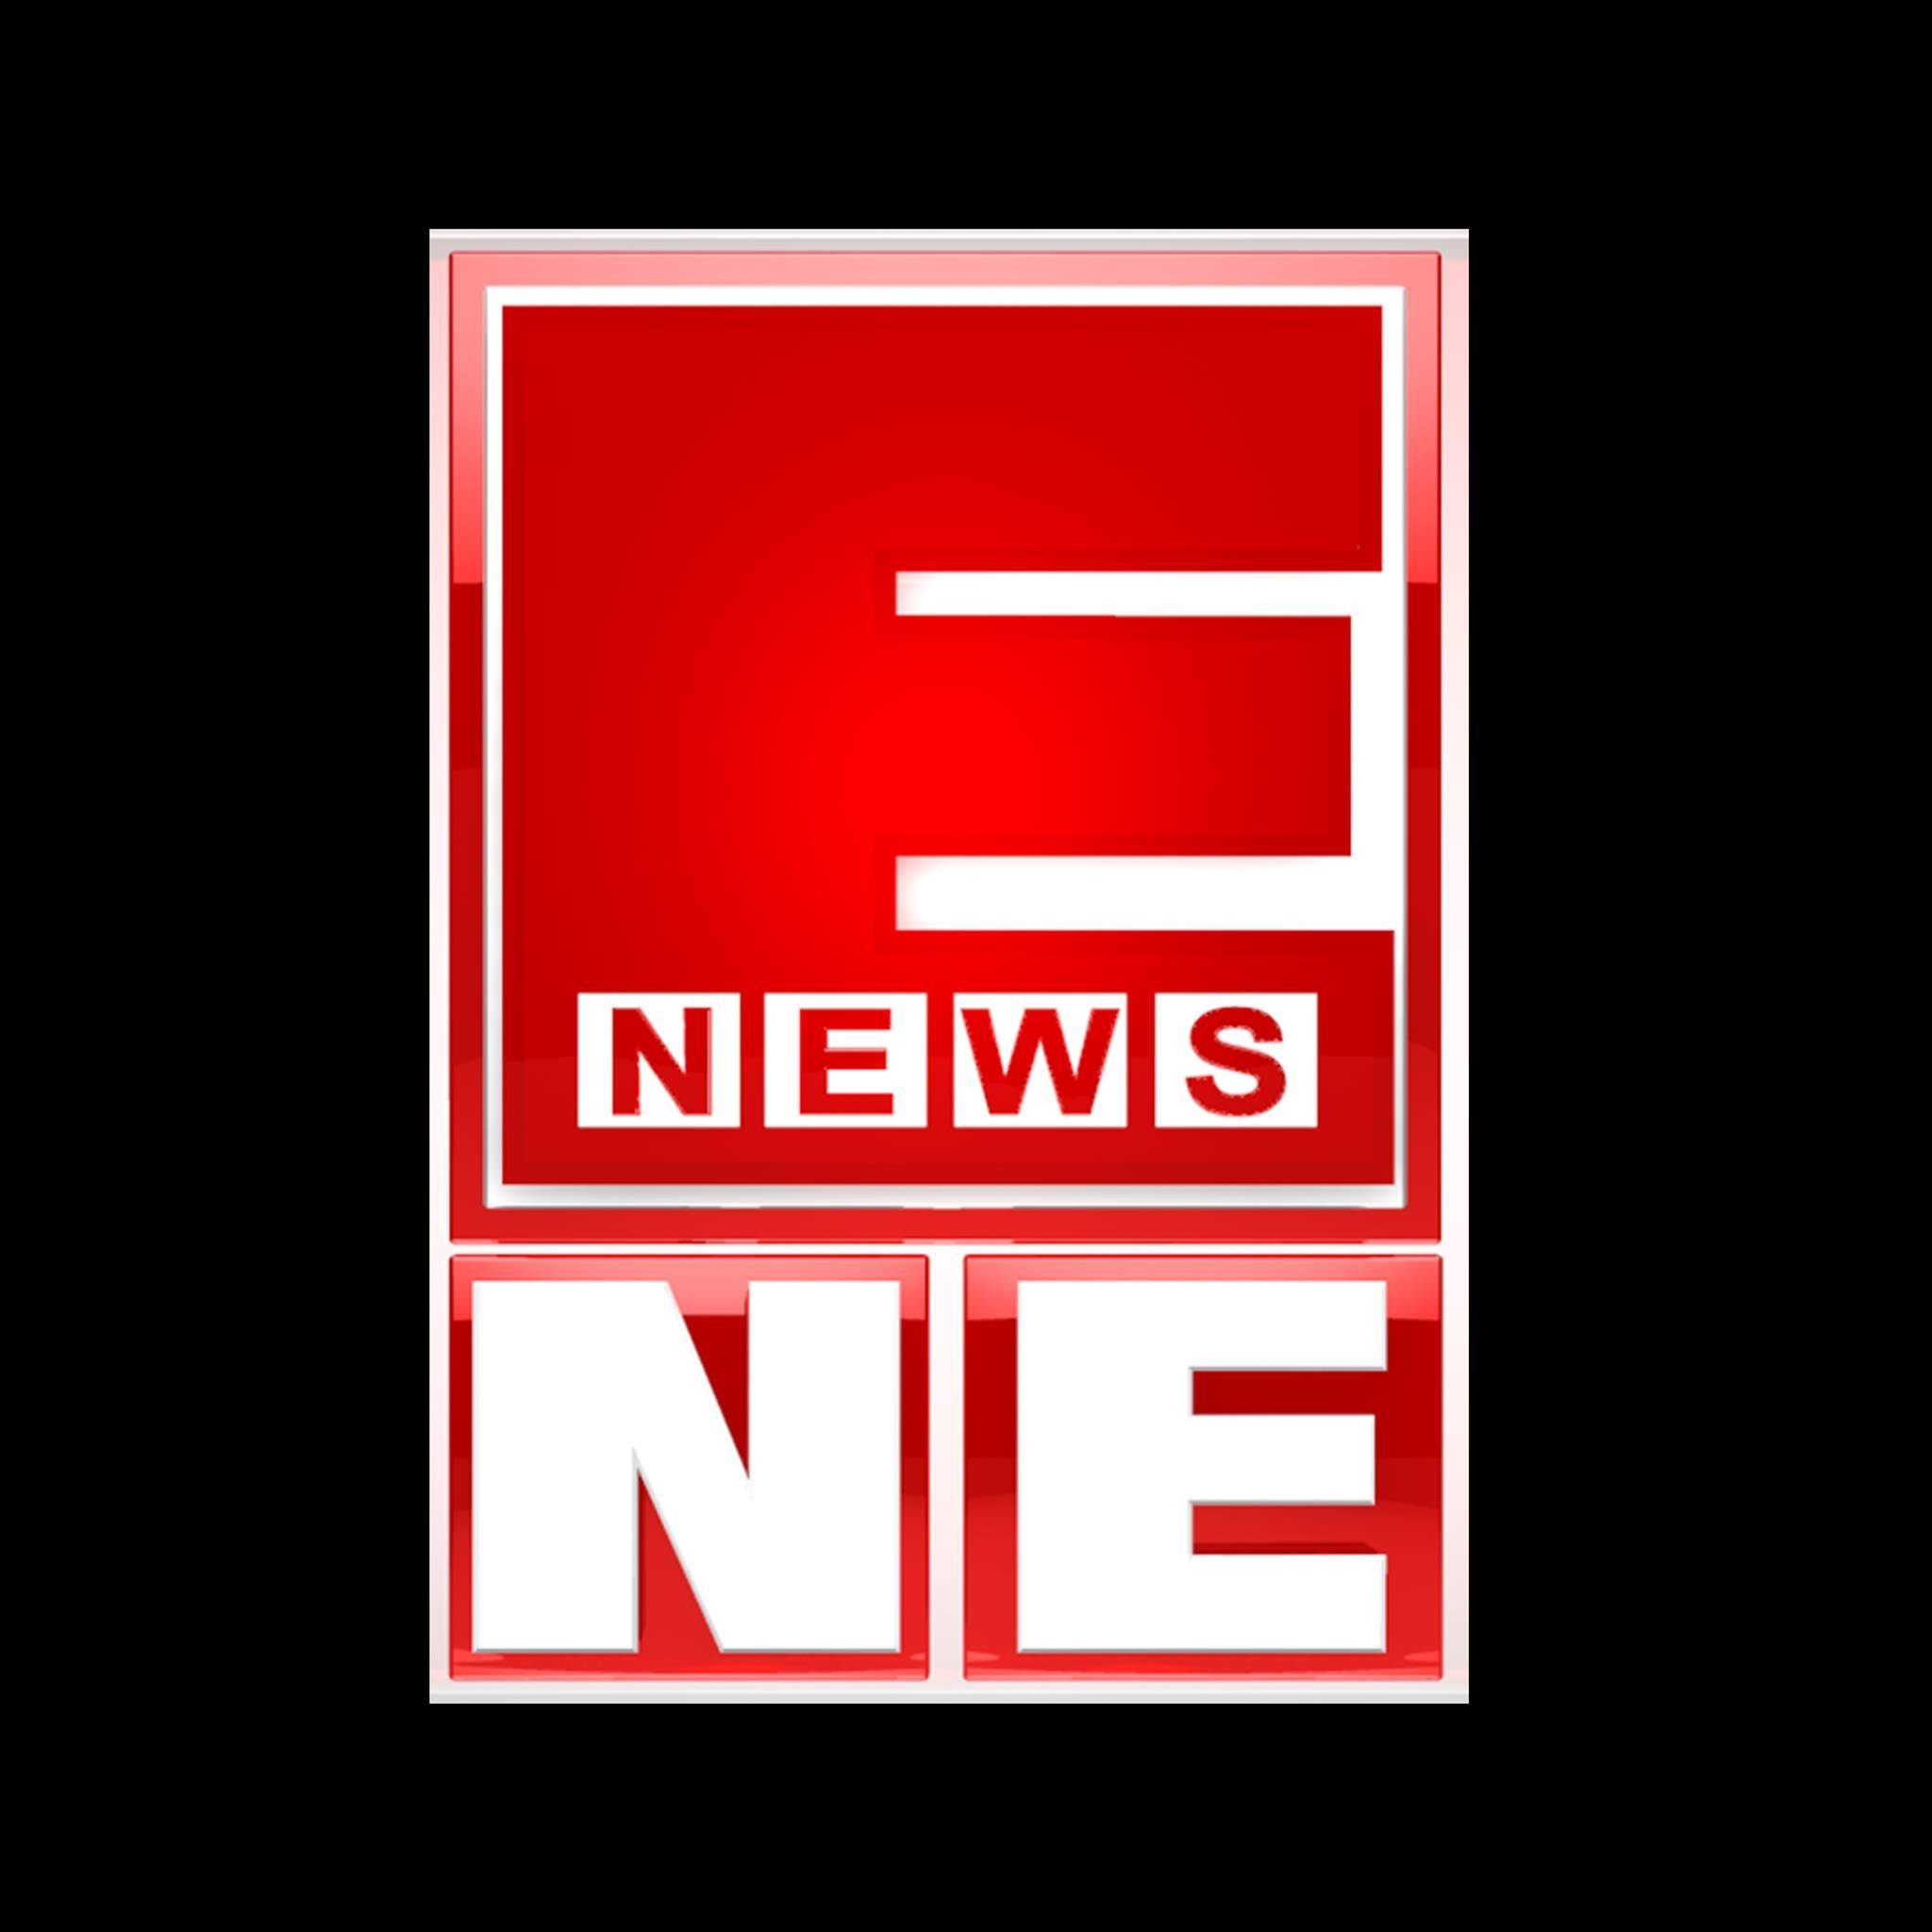 E NEWS NE